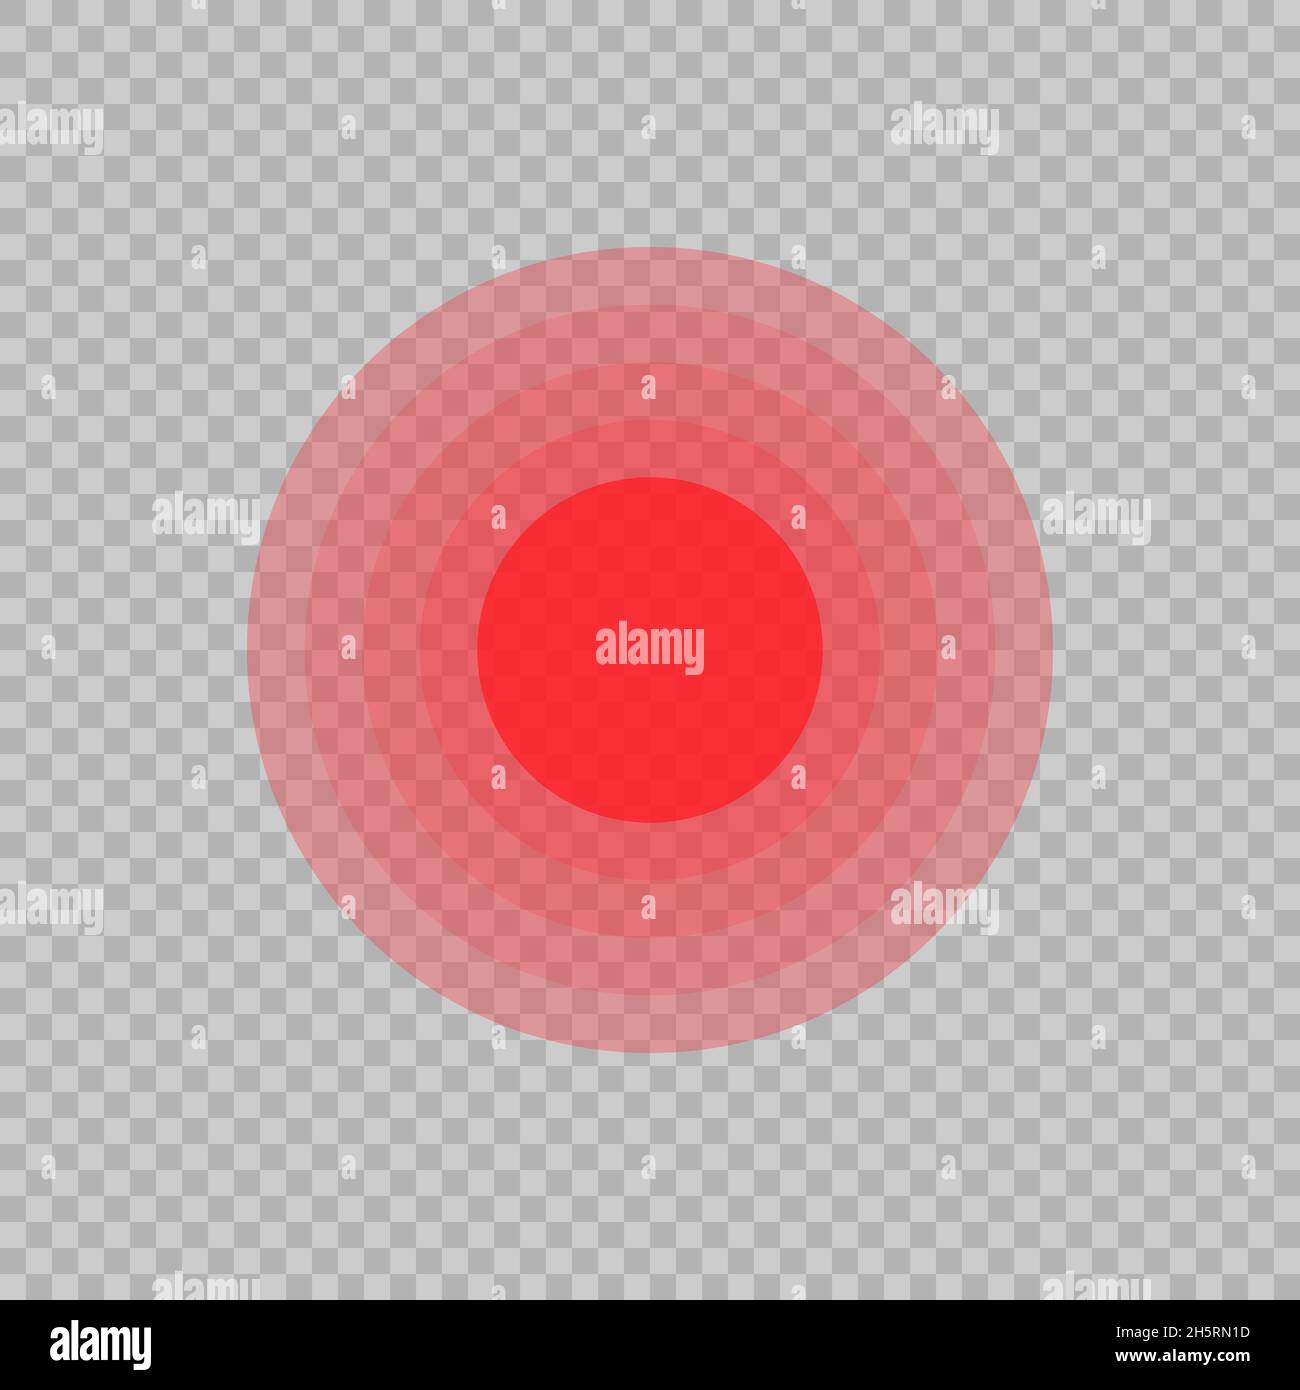 Dolore cerchio rosso in stile piatto. Illustrazione vettoriale astratta per il decign wab Illustrazione Vettoriale